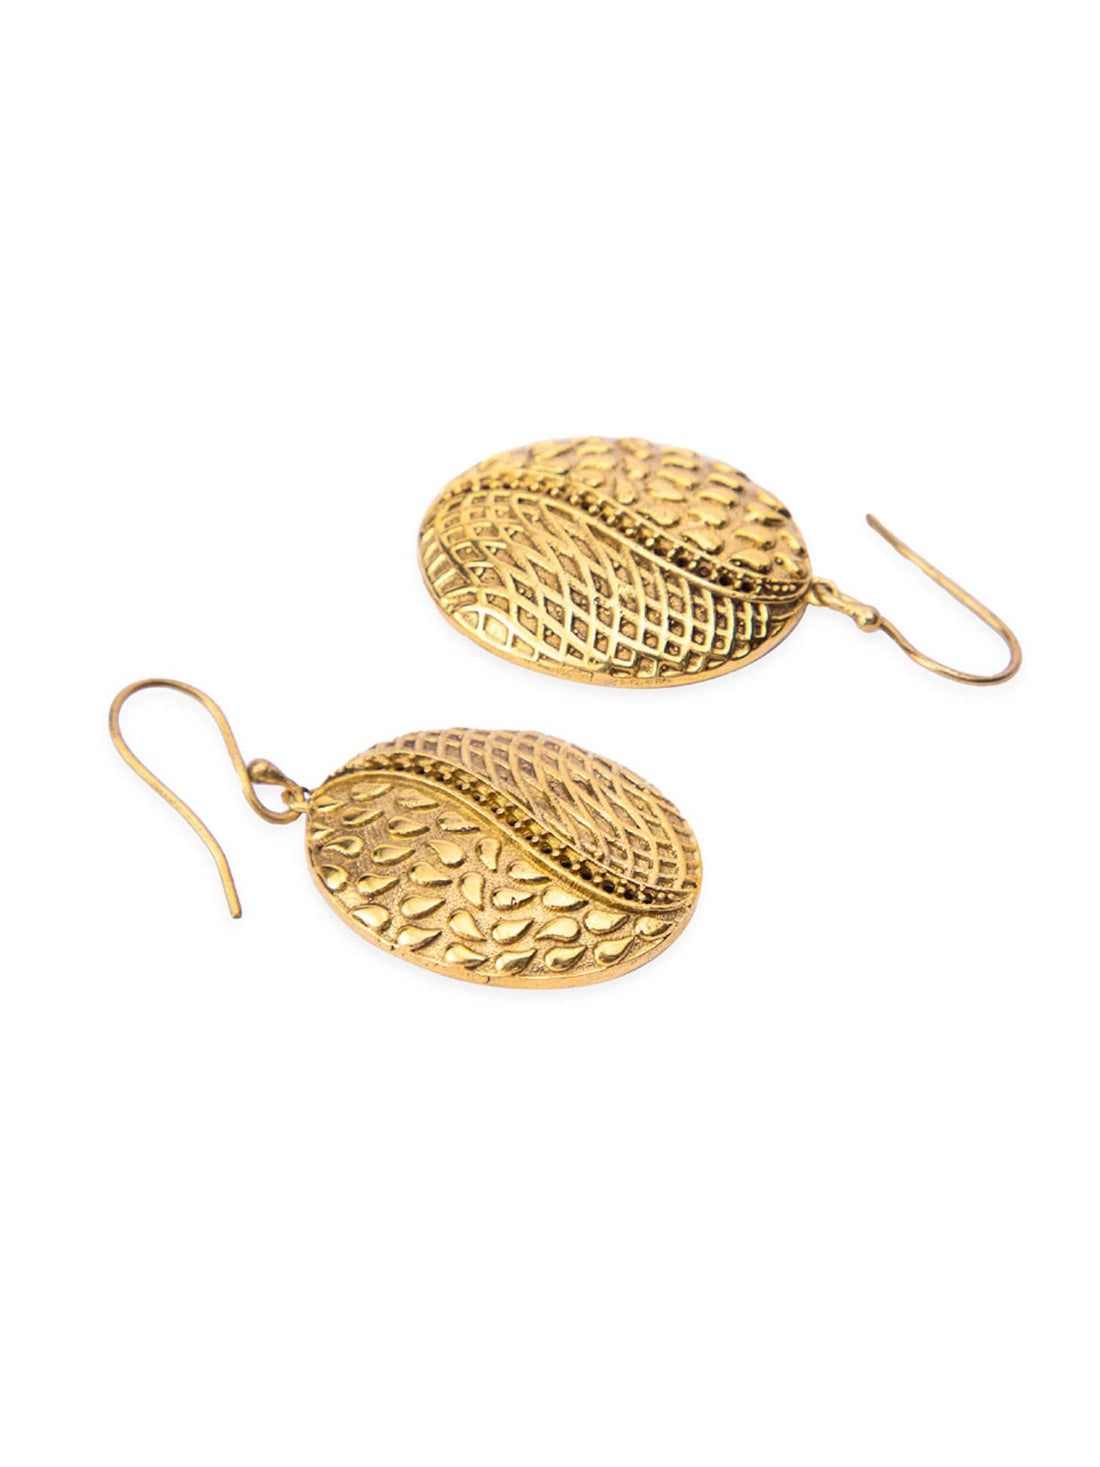 Work Wear Drops & Danglers Earrings - Western Gold and Silver-Plated Brass Earrings By Studio One Love